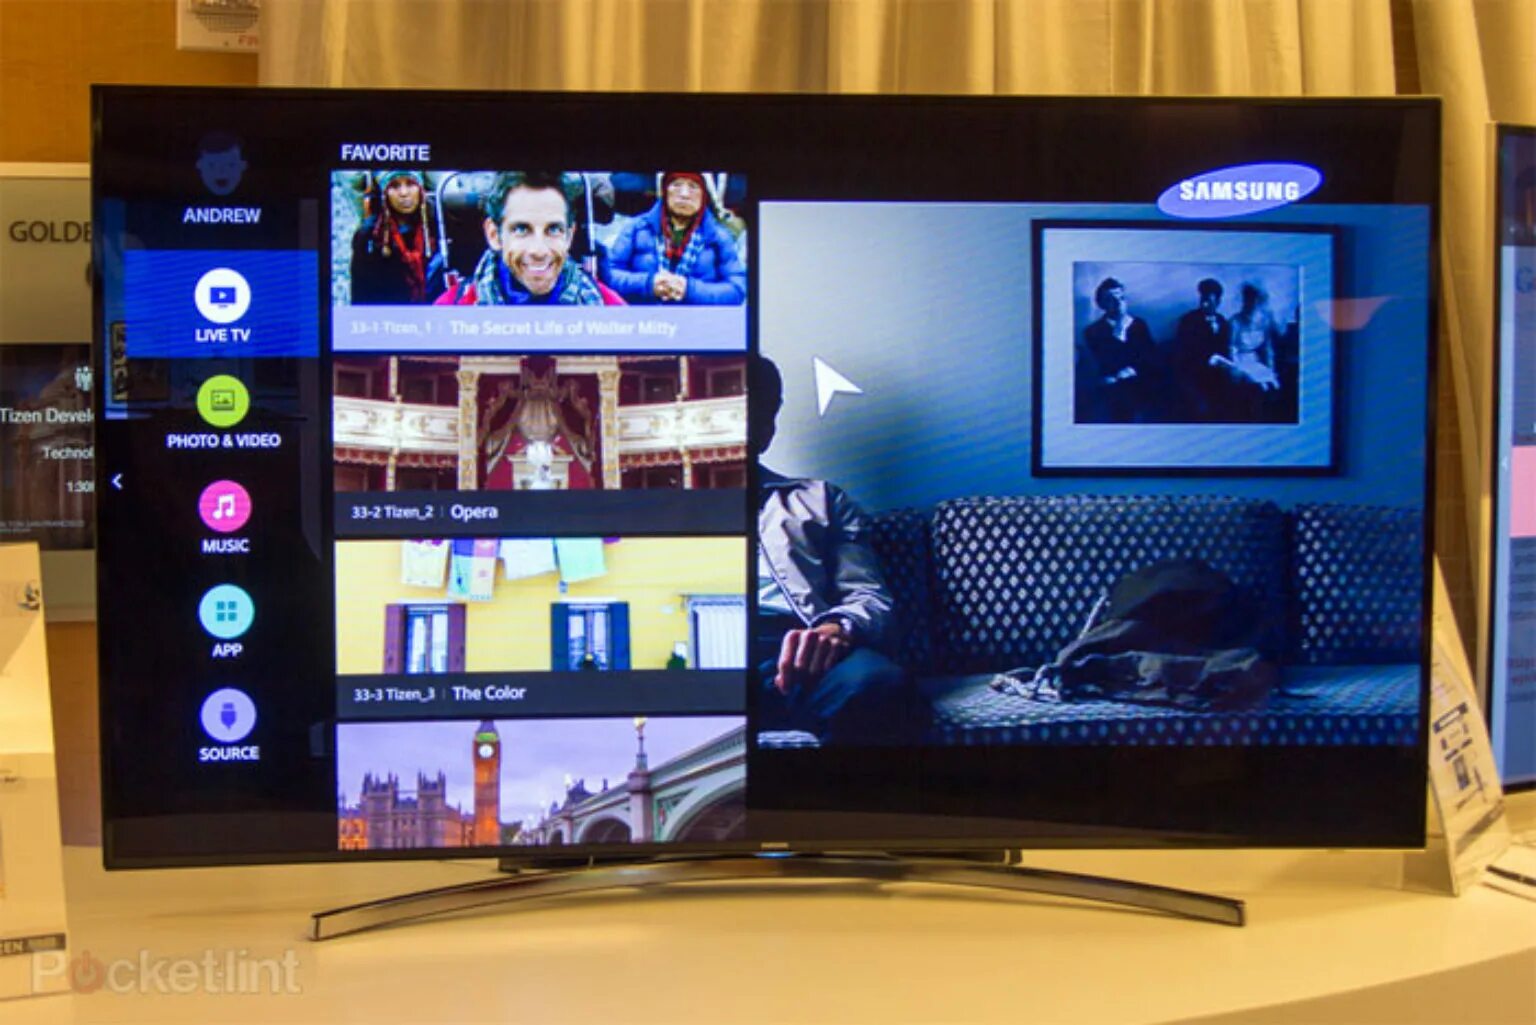 Операционная телевизоров самсунг. Tizen Samsung Smart TV. ОС Tizen Samsung Smart TV. Samsung Smart TV 2015. Tizen os Samsung Smart TV последняя версия.